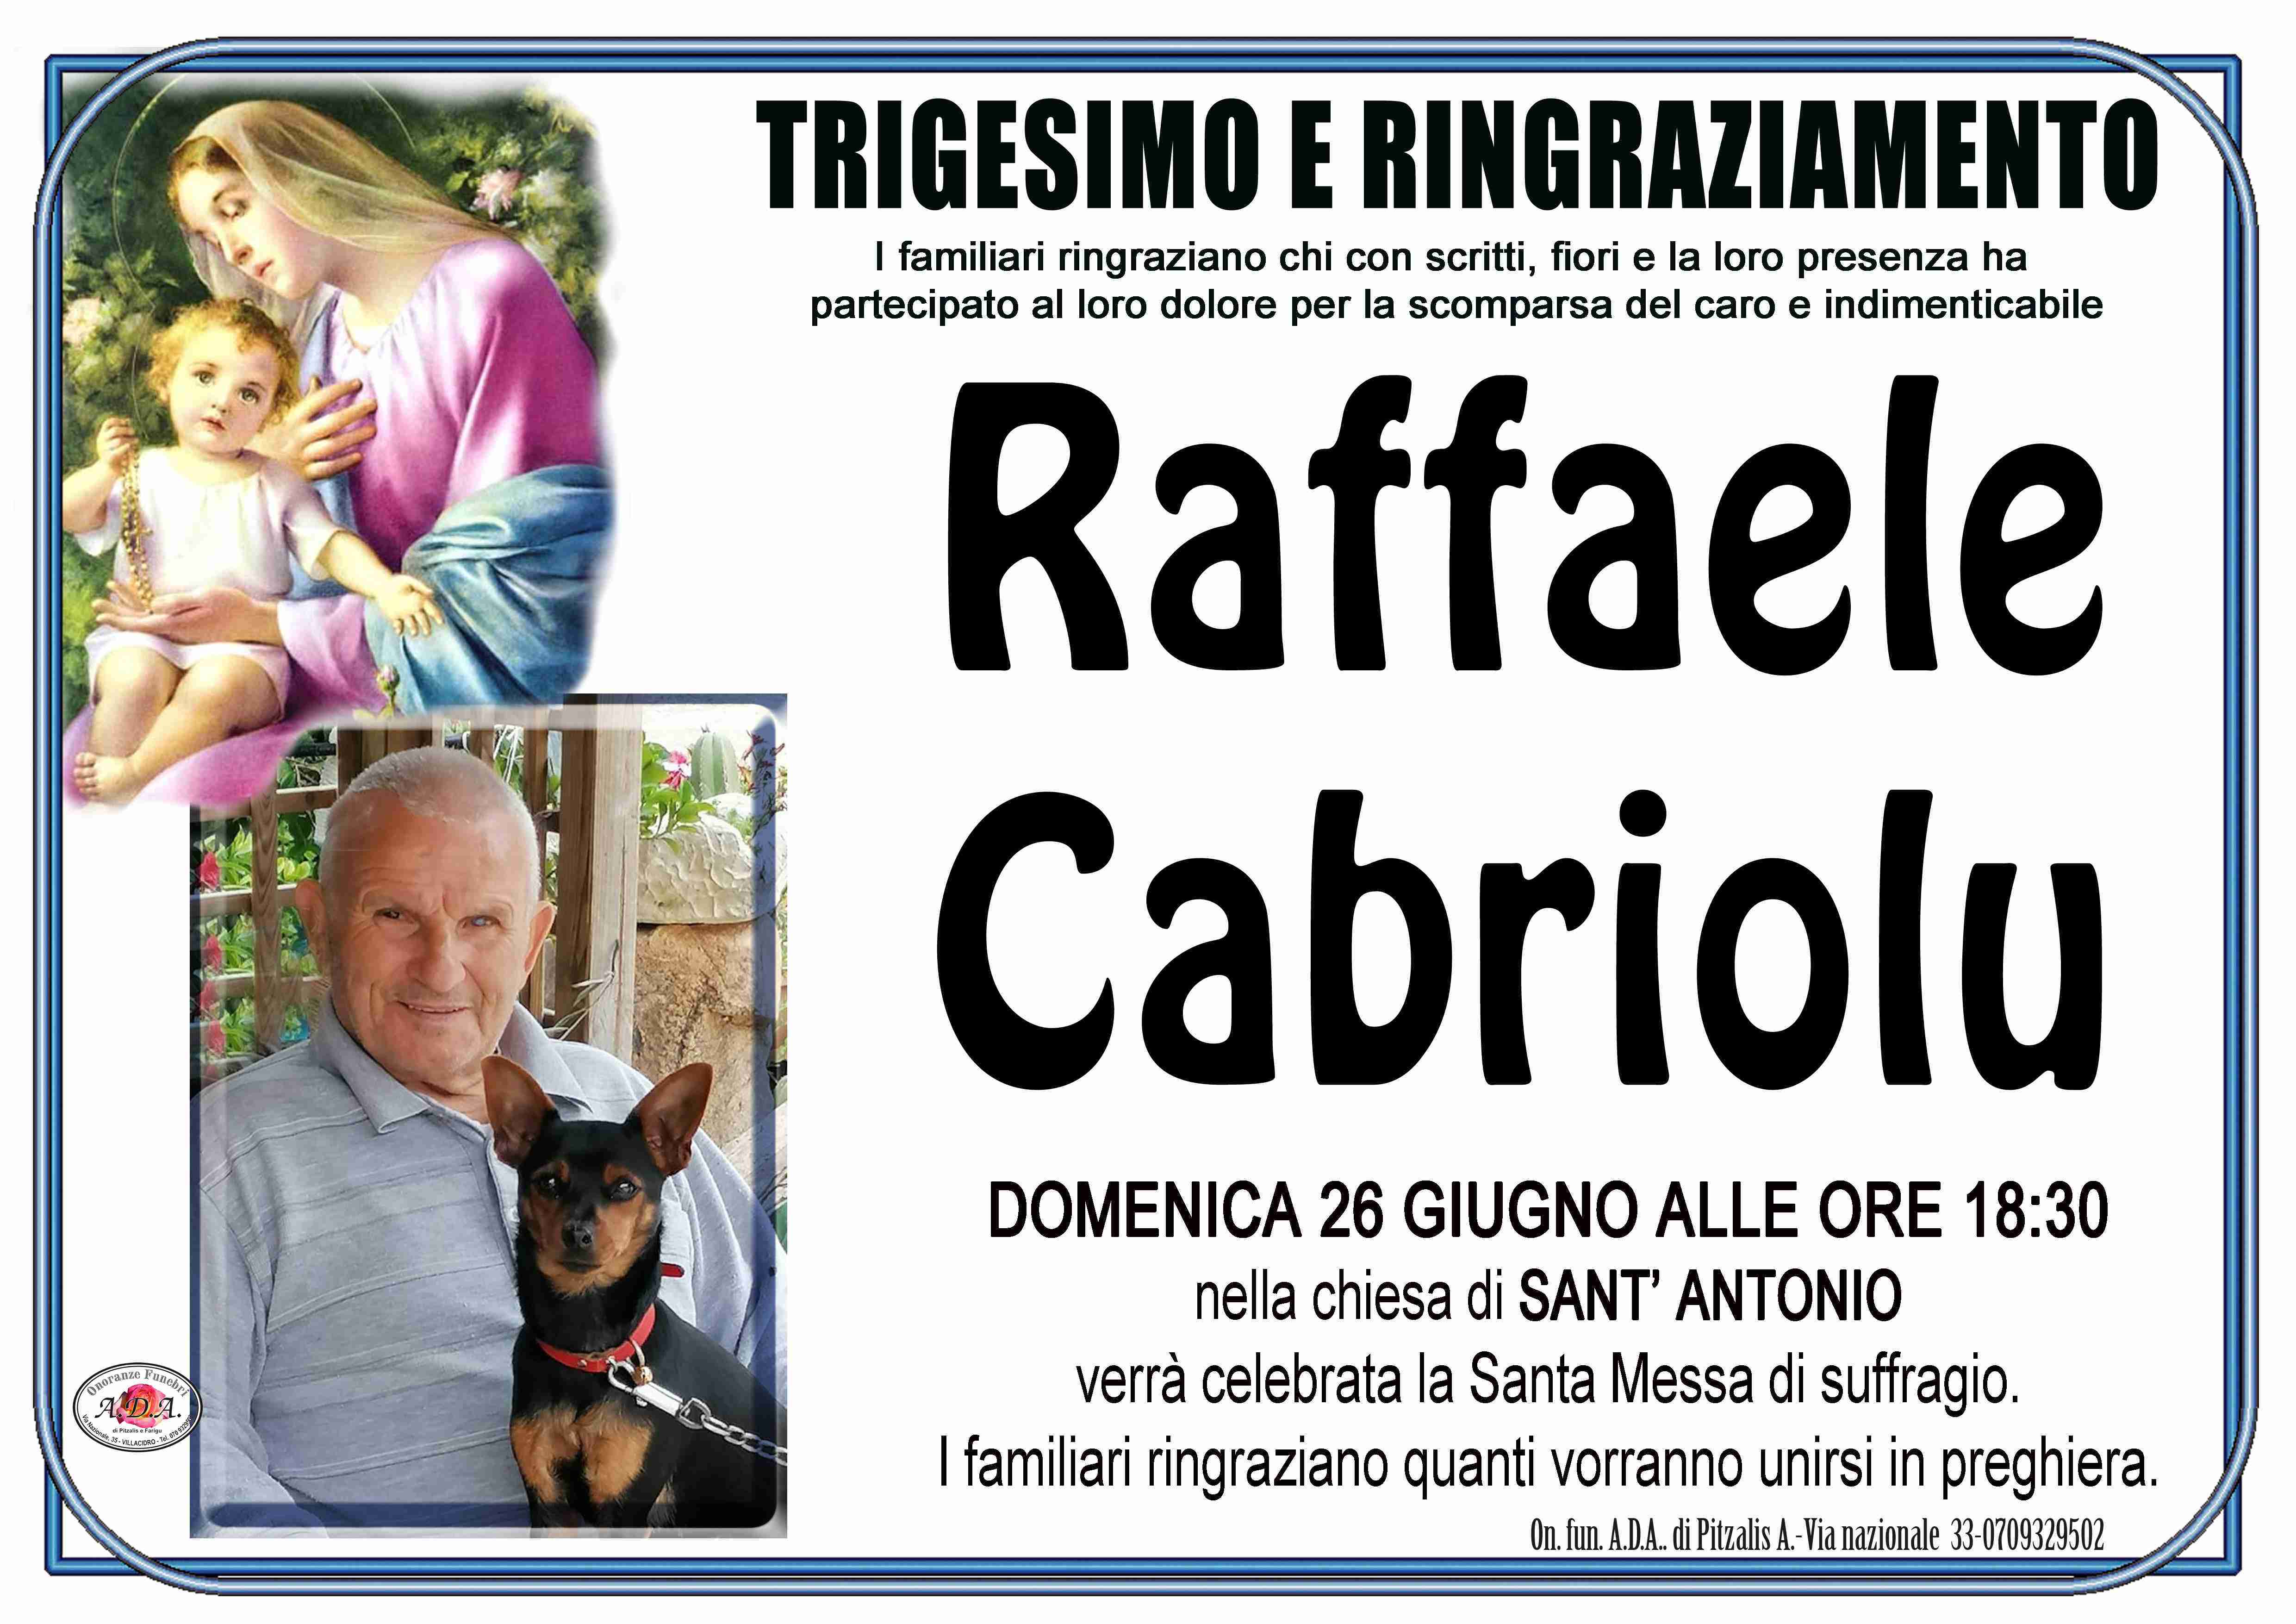 Raffaele Cabriolu